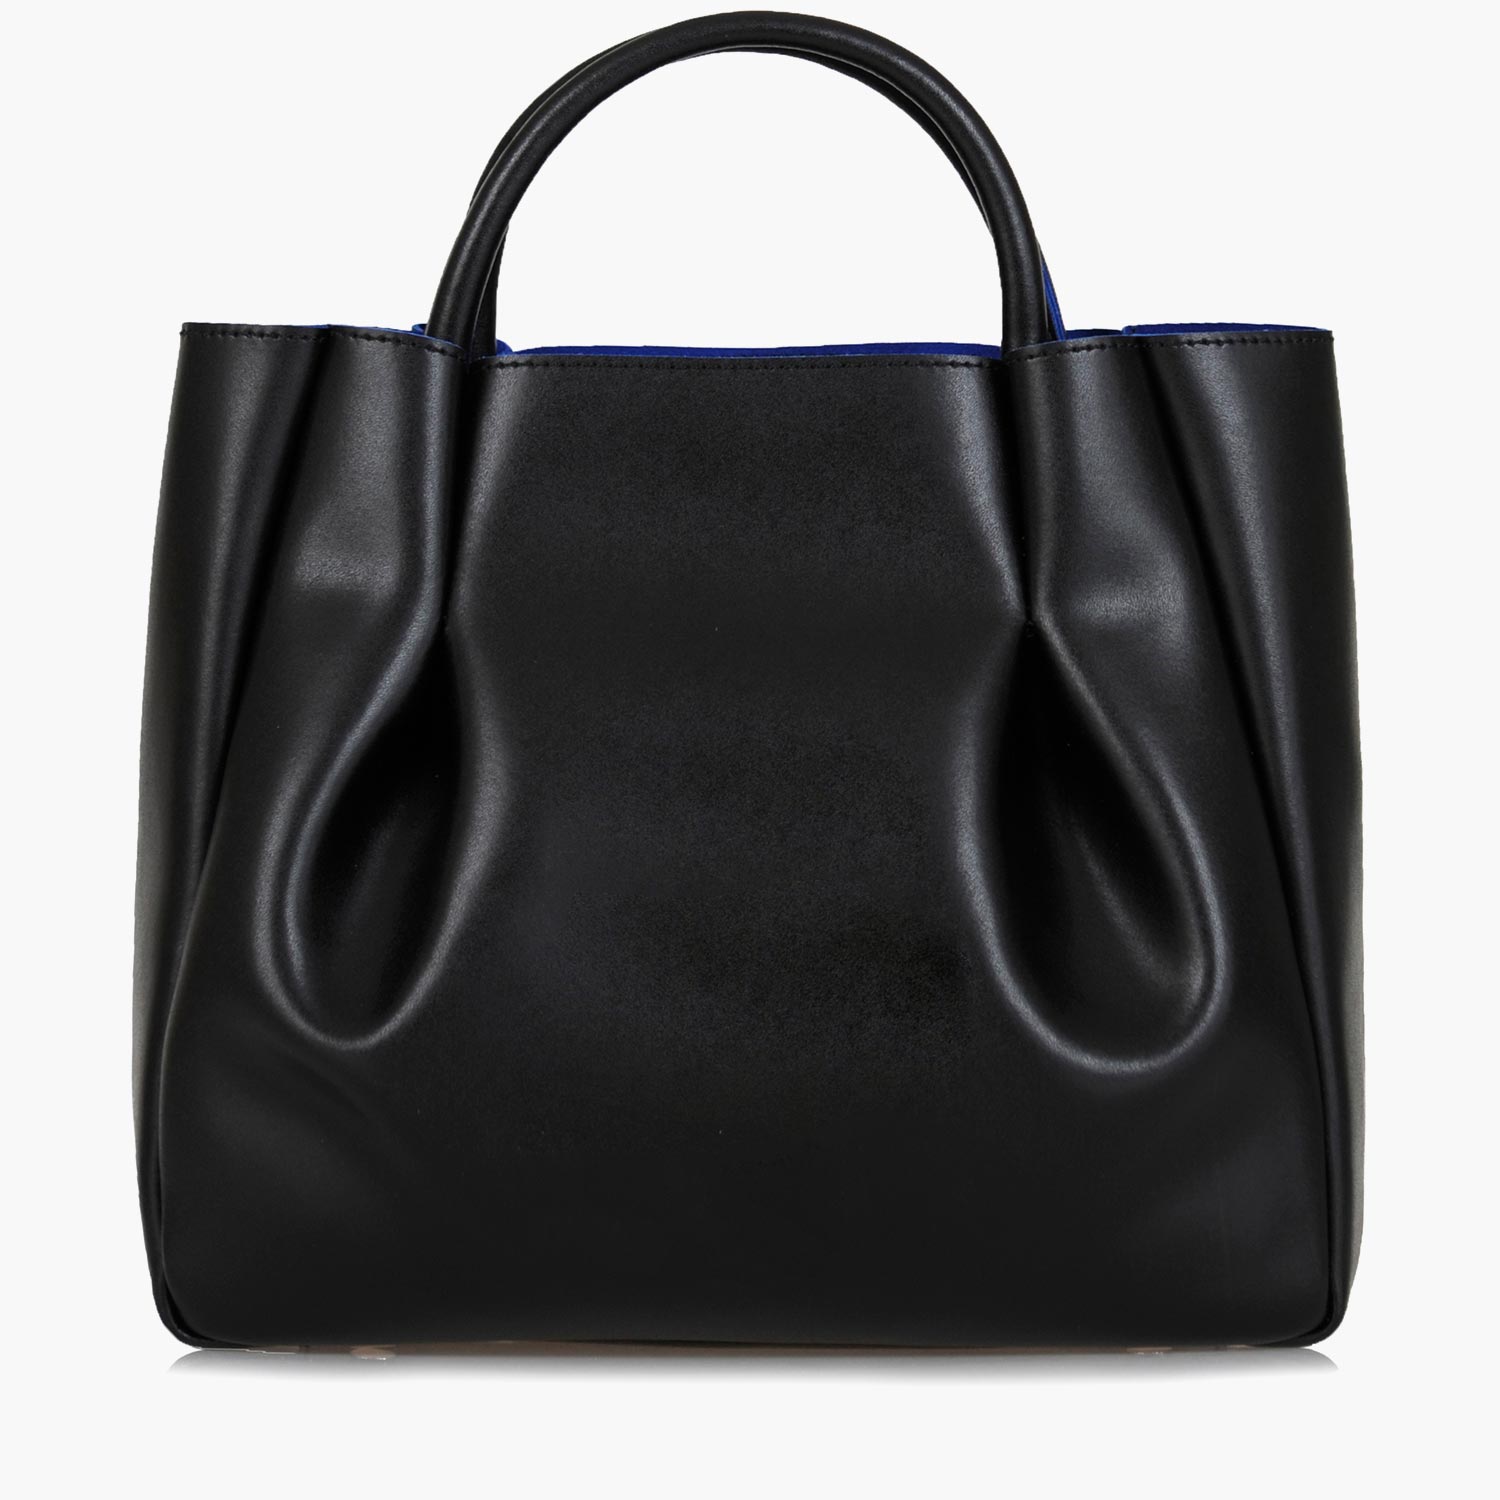 Sofia C. Black genuine leather shoulder bag handbag purse Large | eBay